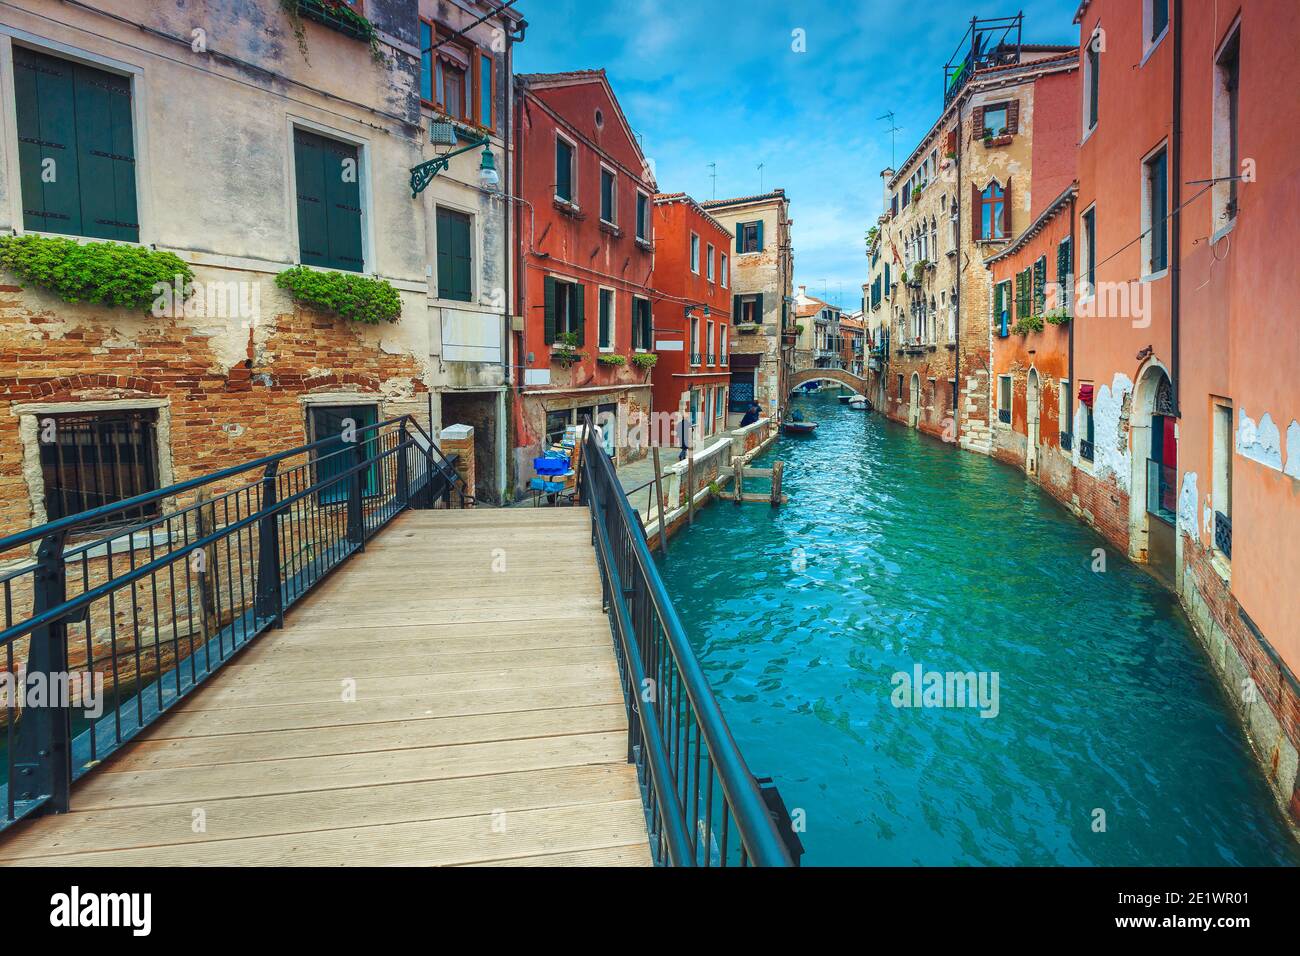 Stretto canale d'acqua con ponti e colorati edifici antichi. Grande destinazione turistica e turistica, Venezia, Italia, Europa Foto Stock